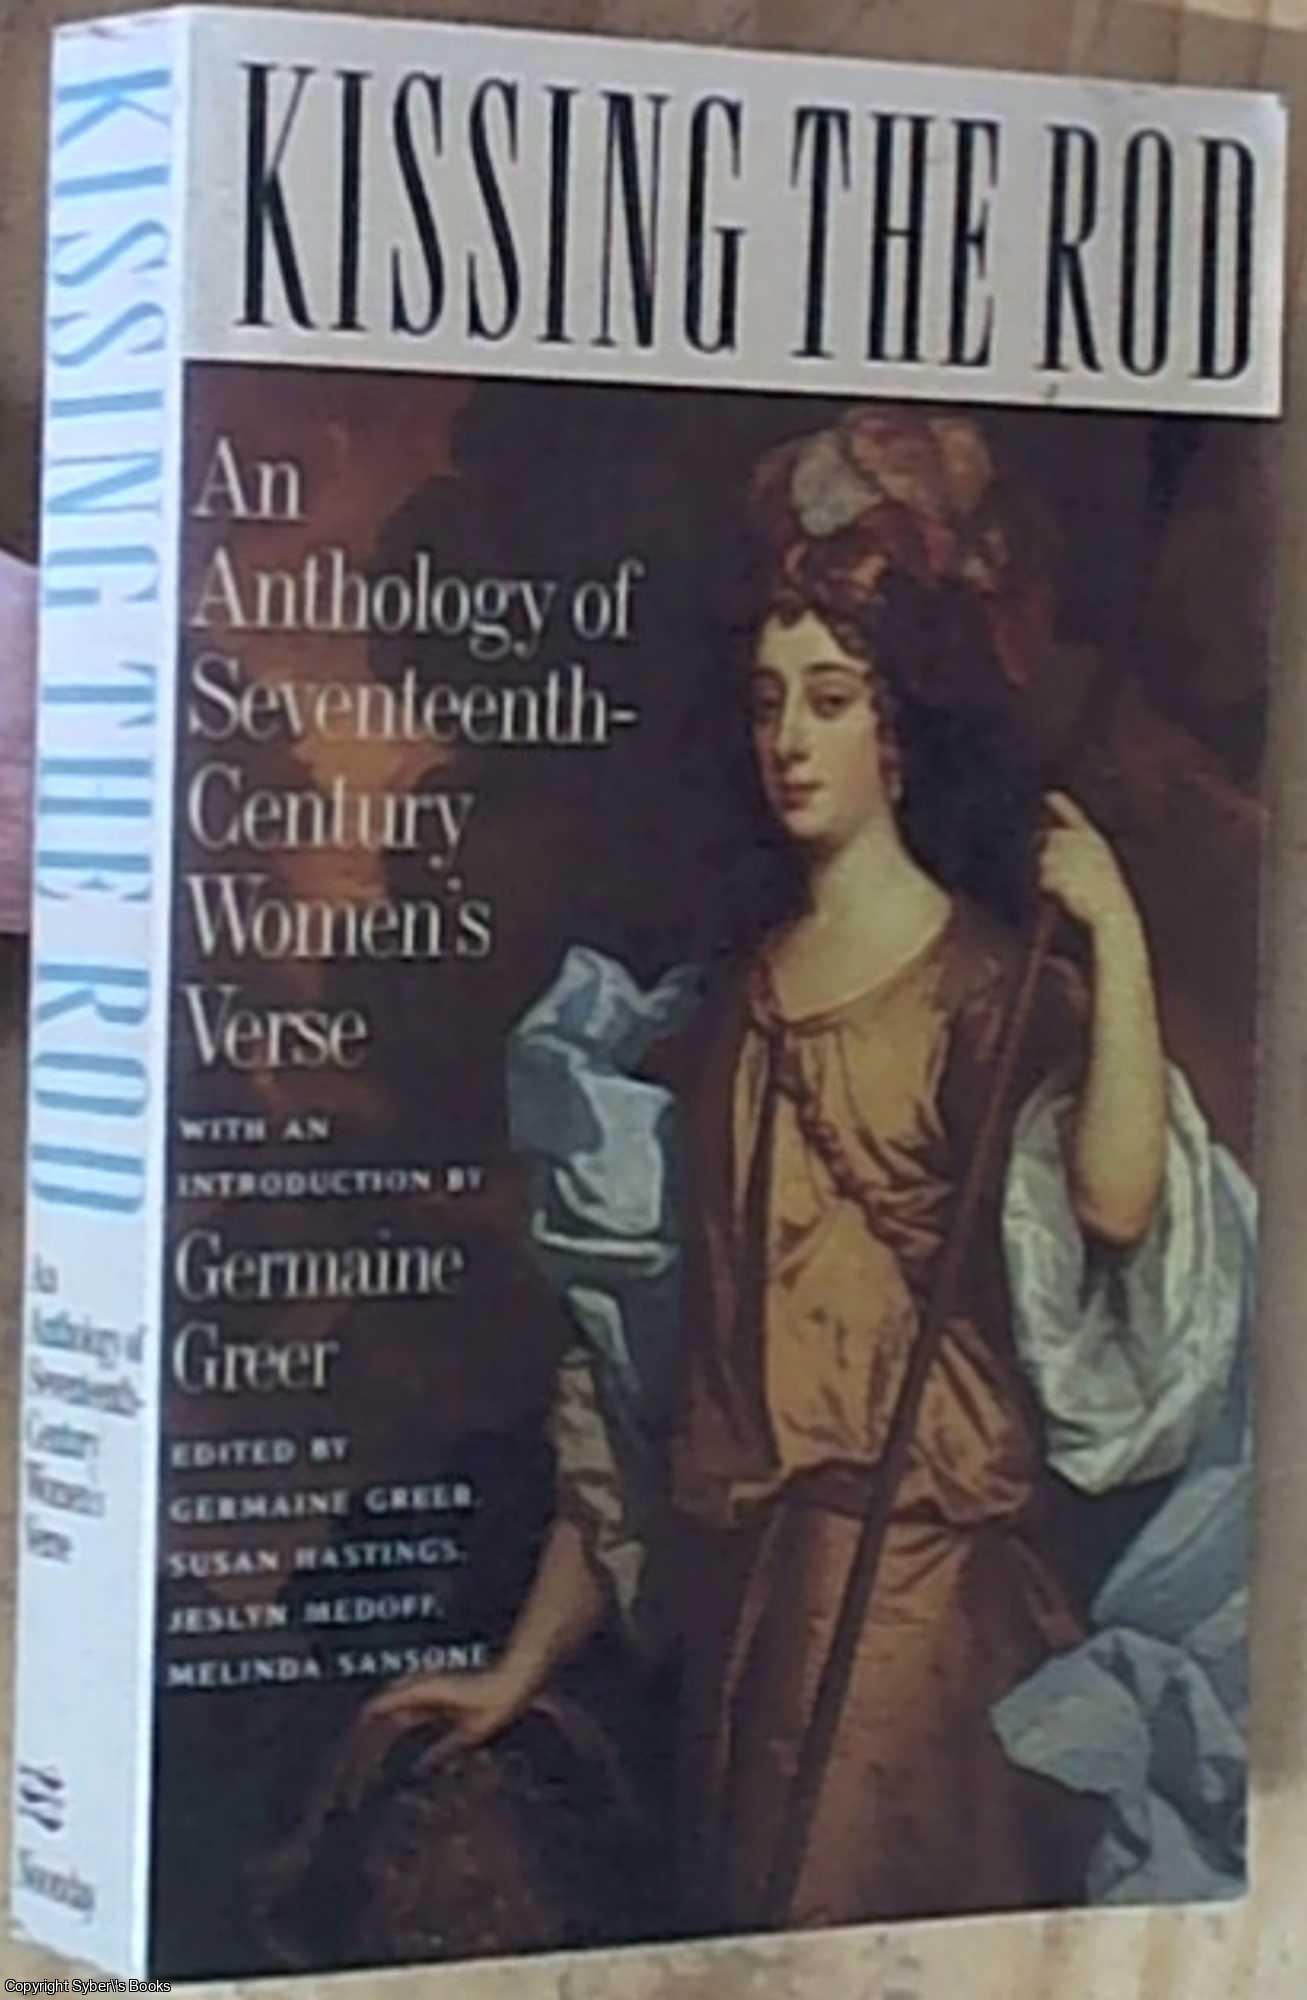 Greer, Germaine; Hastings, Susan; Medoff, Jeslyn; Sansone, Melinda  Editors - Kissing the Rod An Anthology of Seventeenth-Century Women's Verse